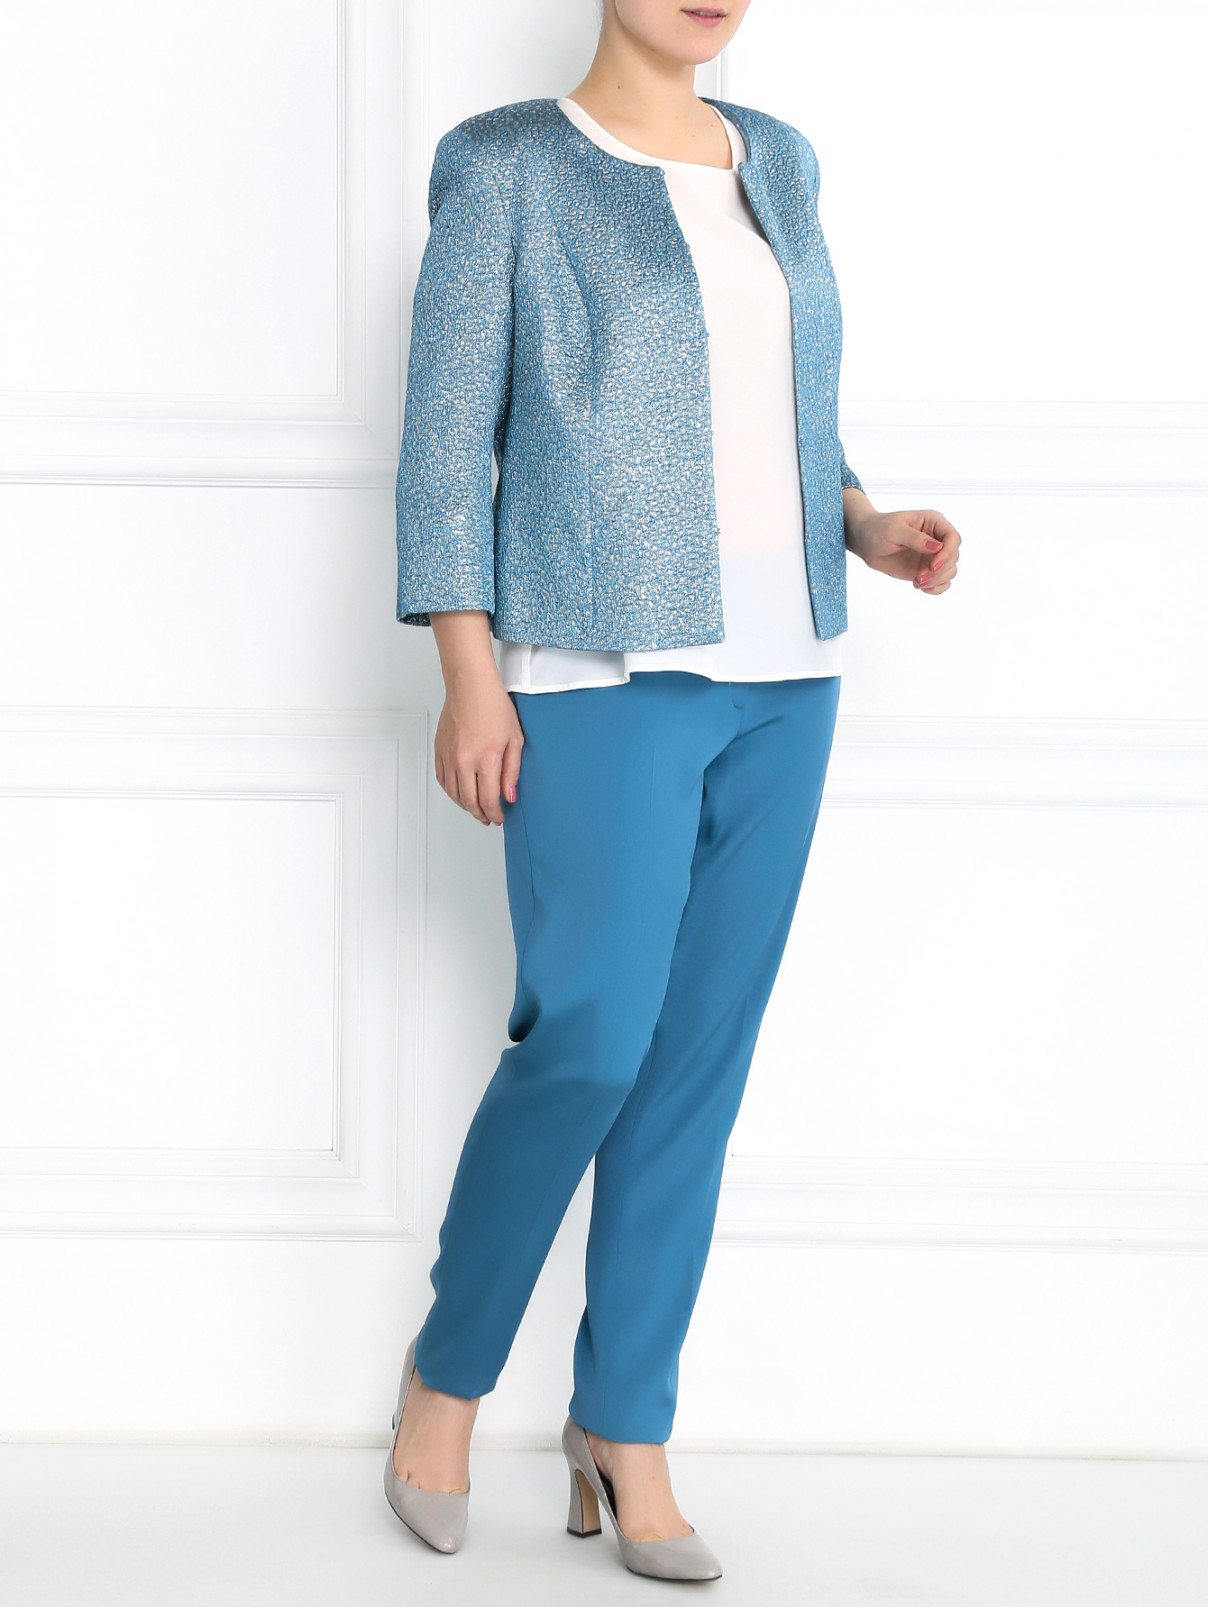 Узкие легкие брюки Marina Rinaldi  –  Модель Общий вид  – Цвет:  Синий